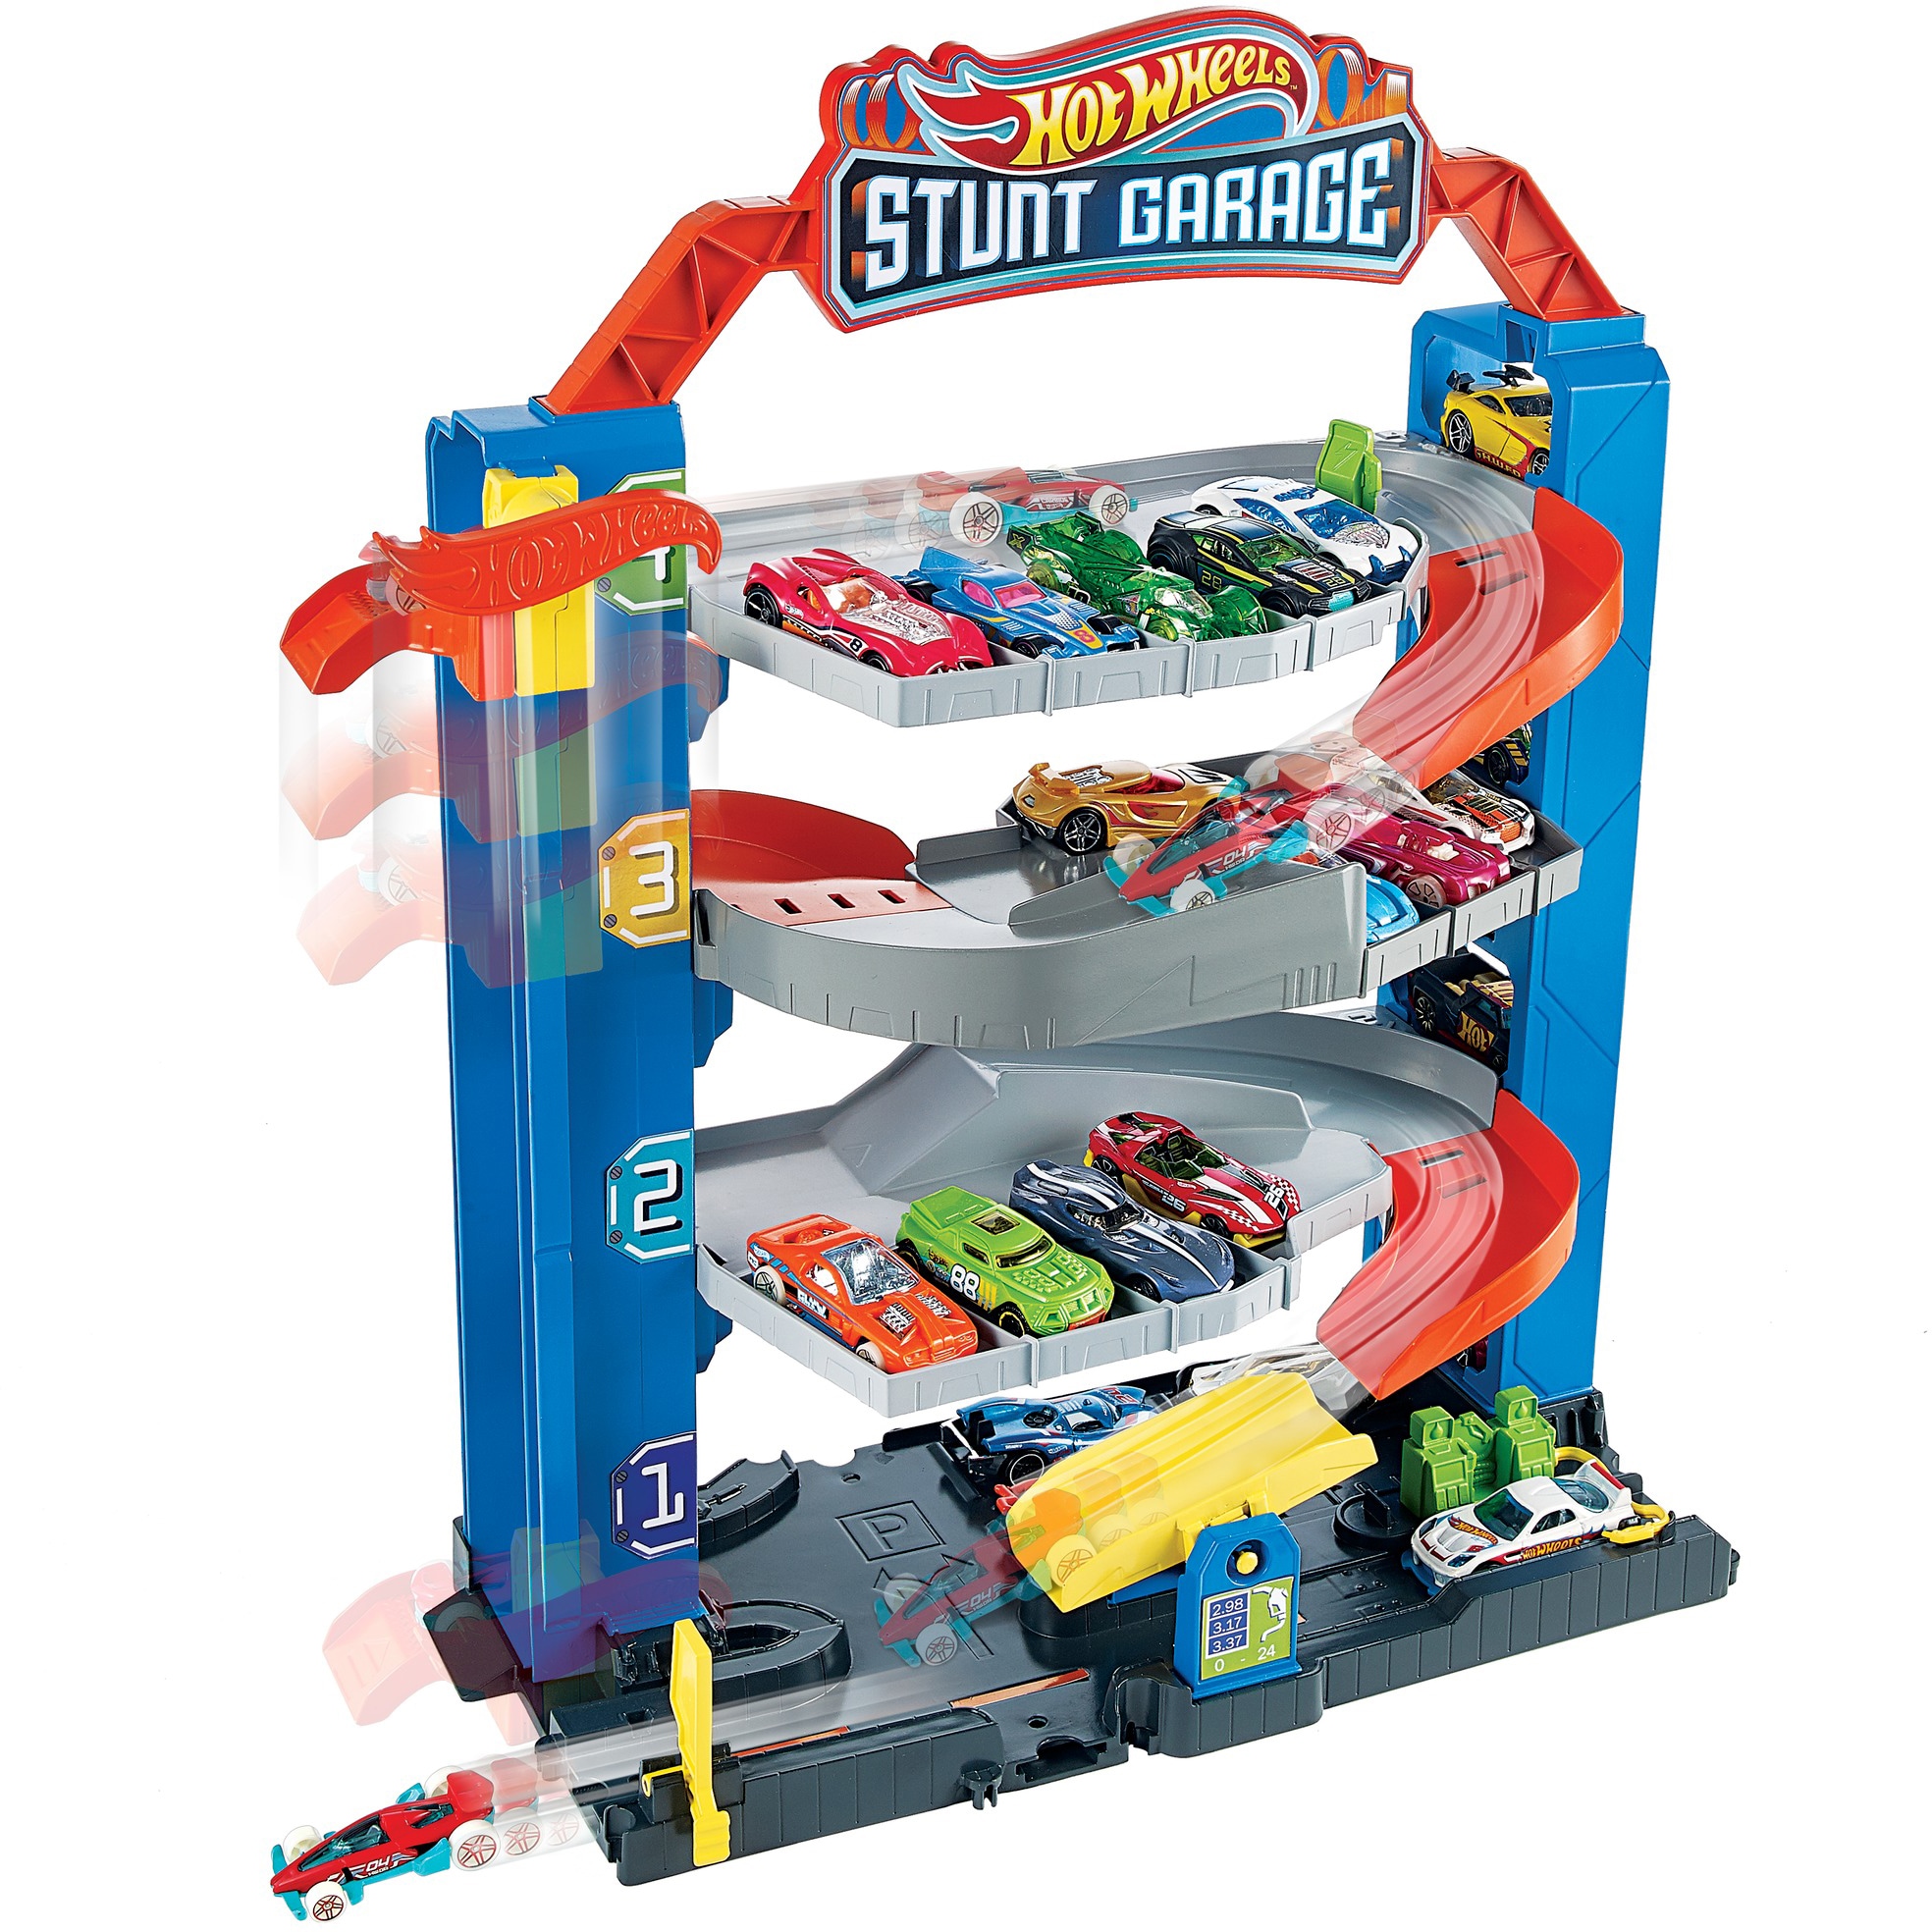 Spielset, 1 Wheels bei Spielzeugauto Spiel-Parkgarage Hot Parkhaus«, inklusive »Stunt-Garage